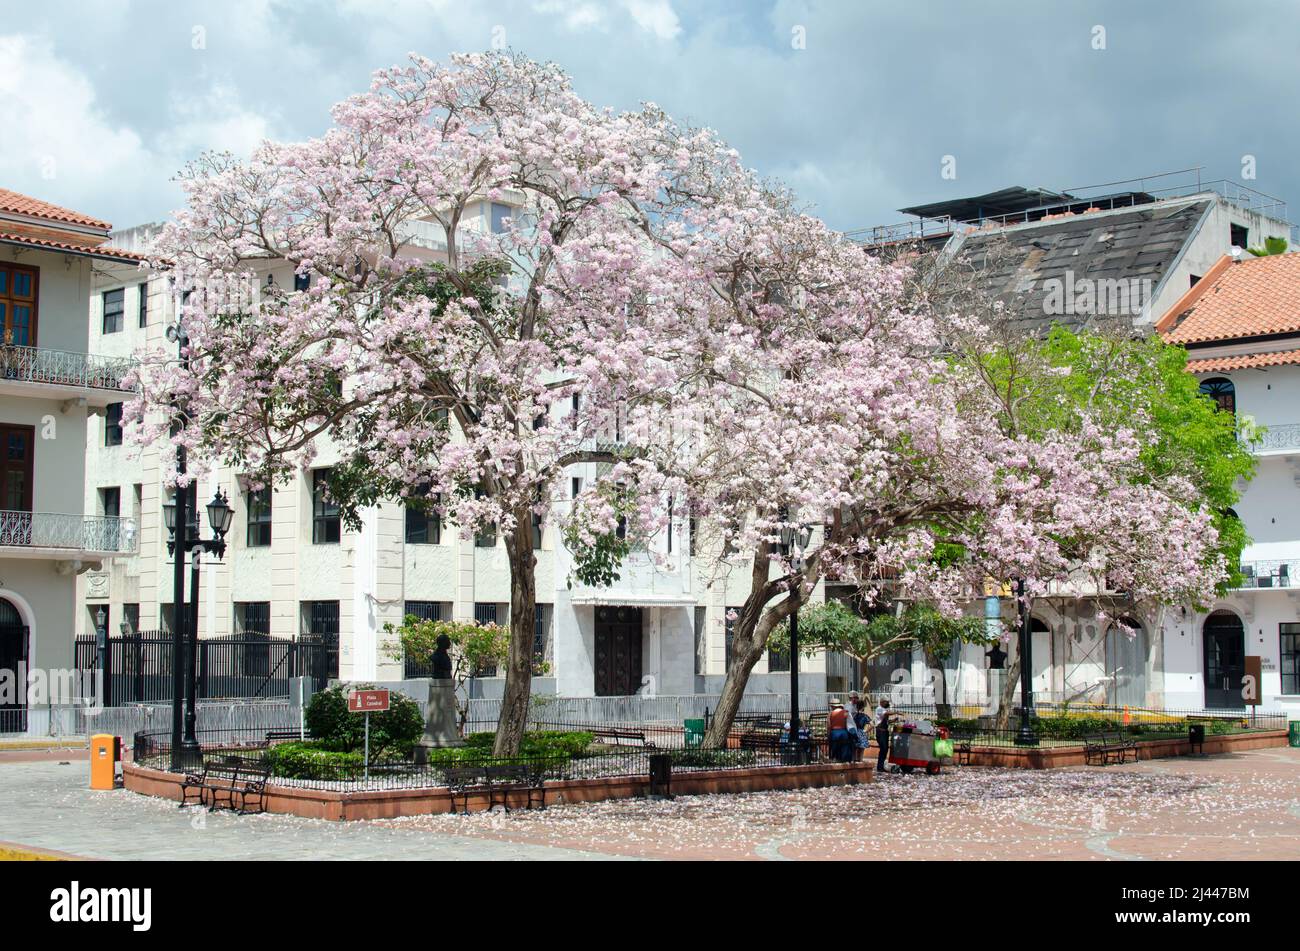 Vista de los alrededores de la Plaza de la Catedral con un árbol impresionante en flor Foto de stock